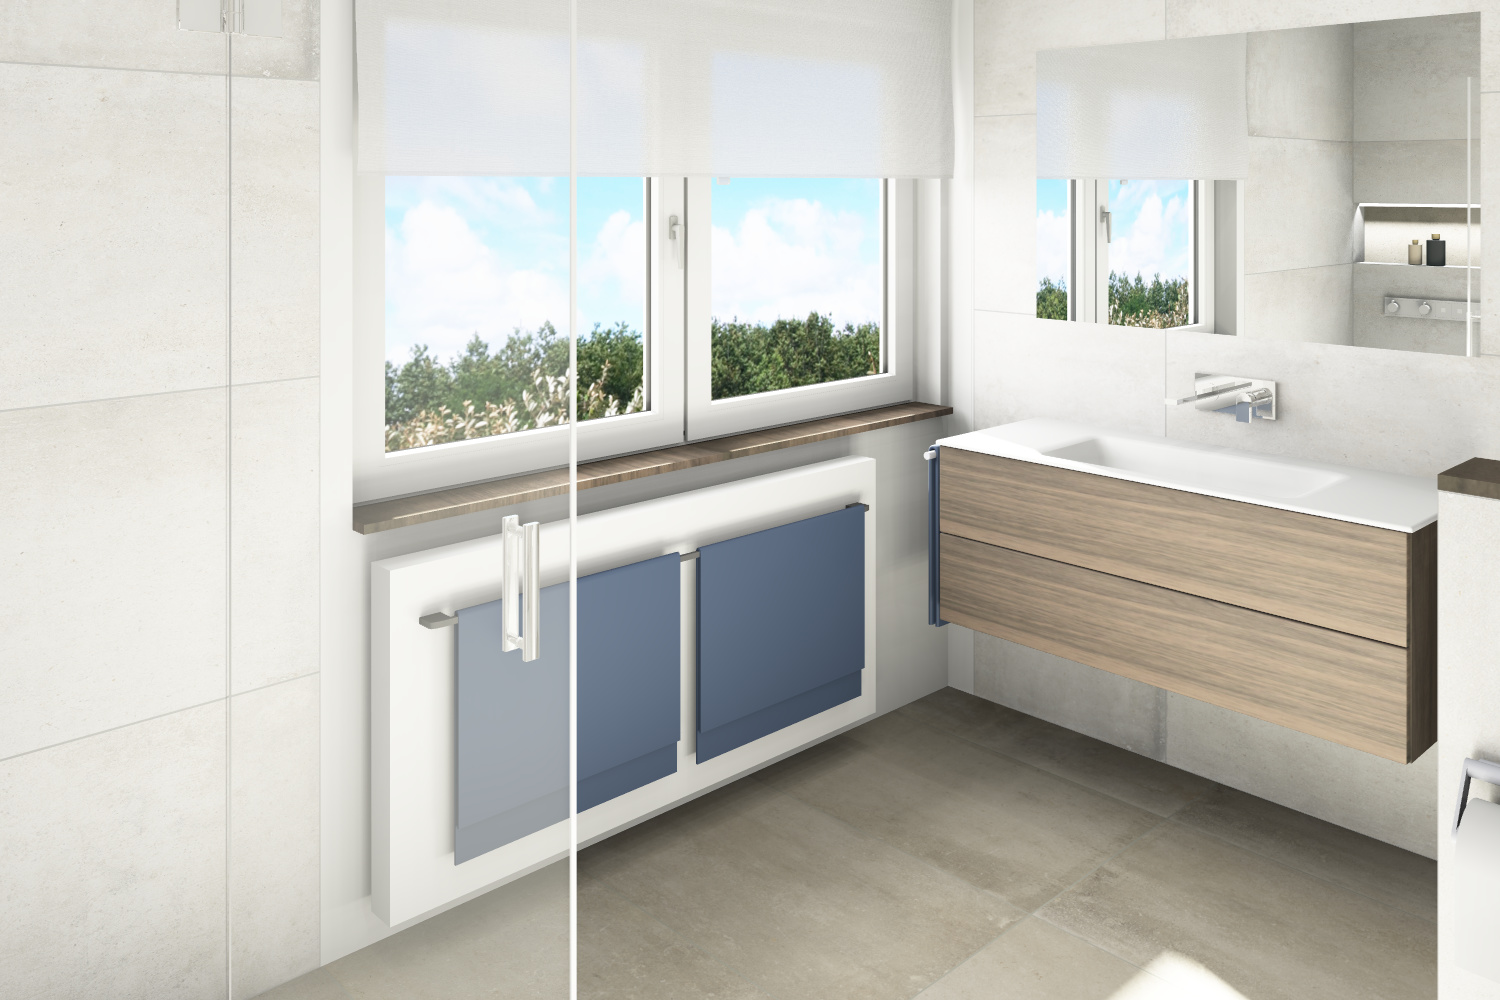 Entwurf Badezimme mit Einbau-Spiegelschrank, Mineralguß-Waschtischanlage. as.designconcepte